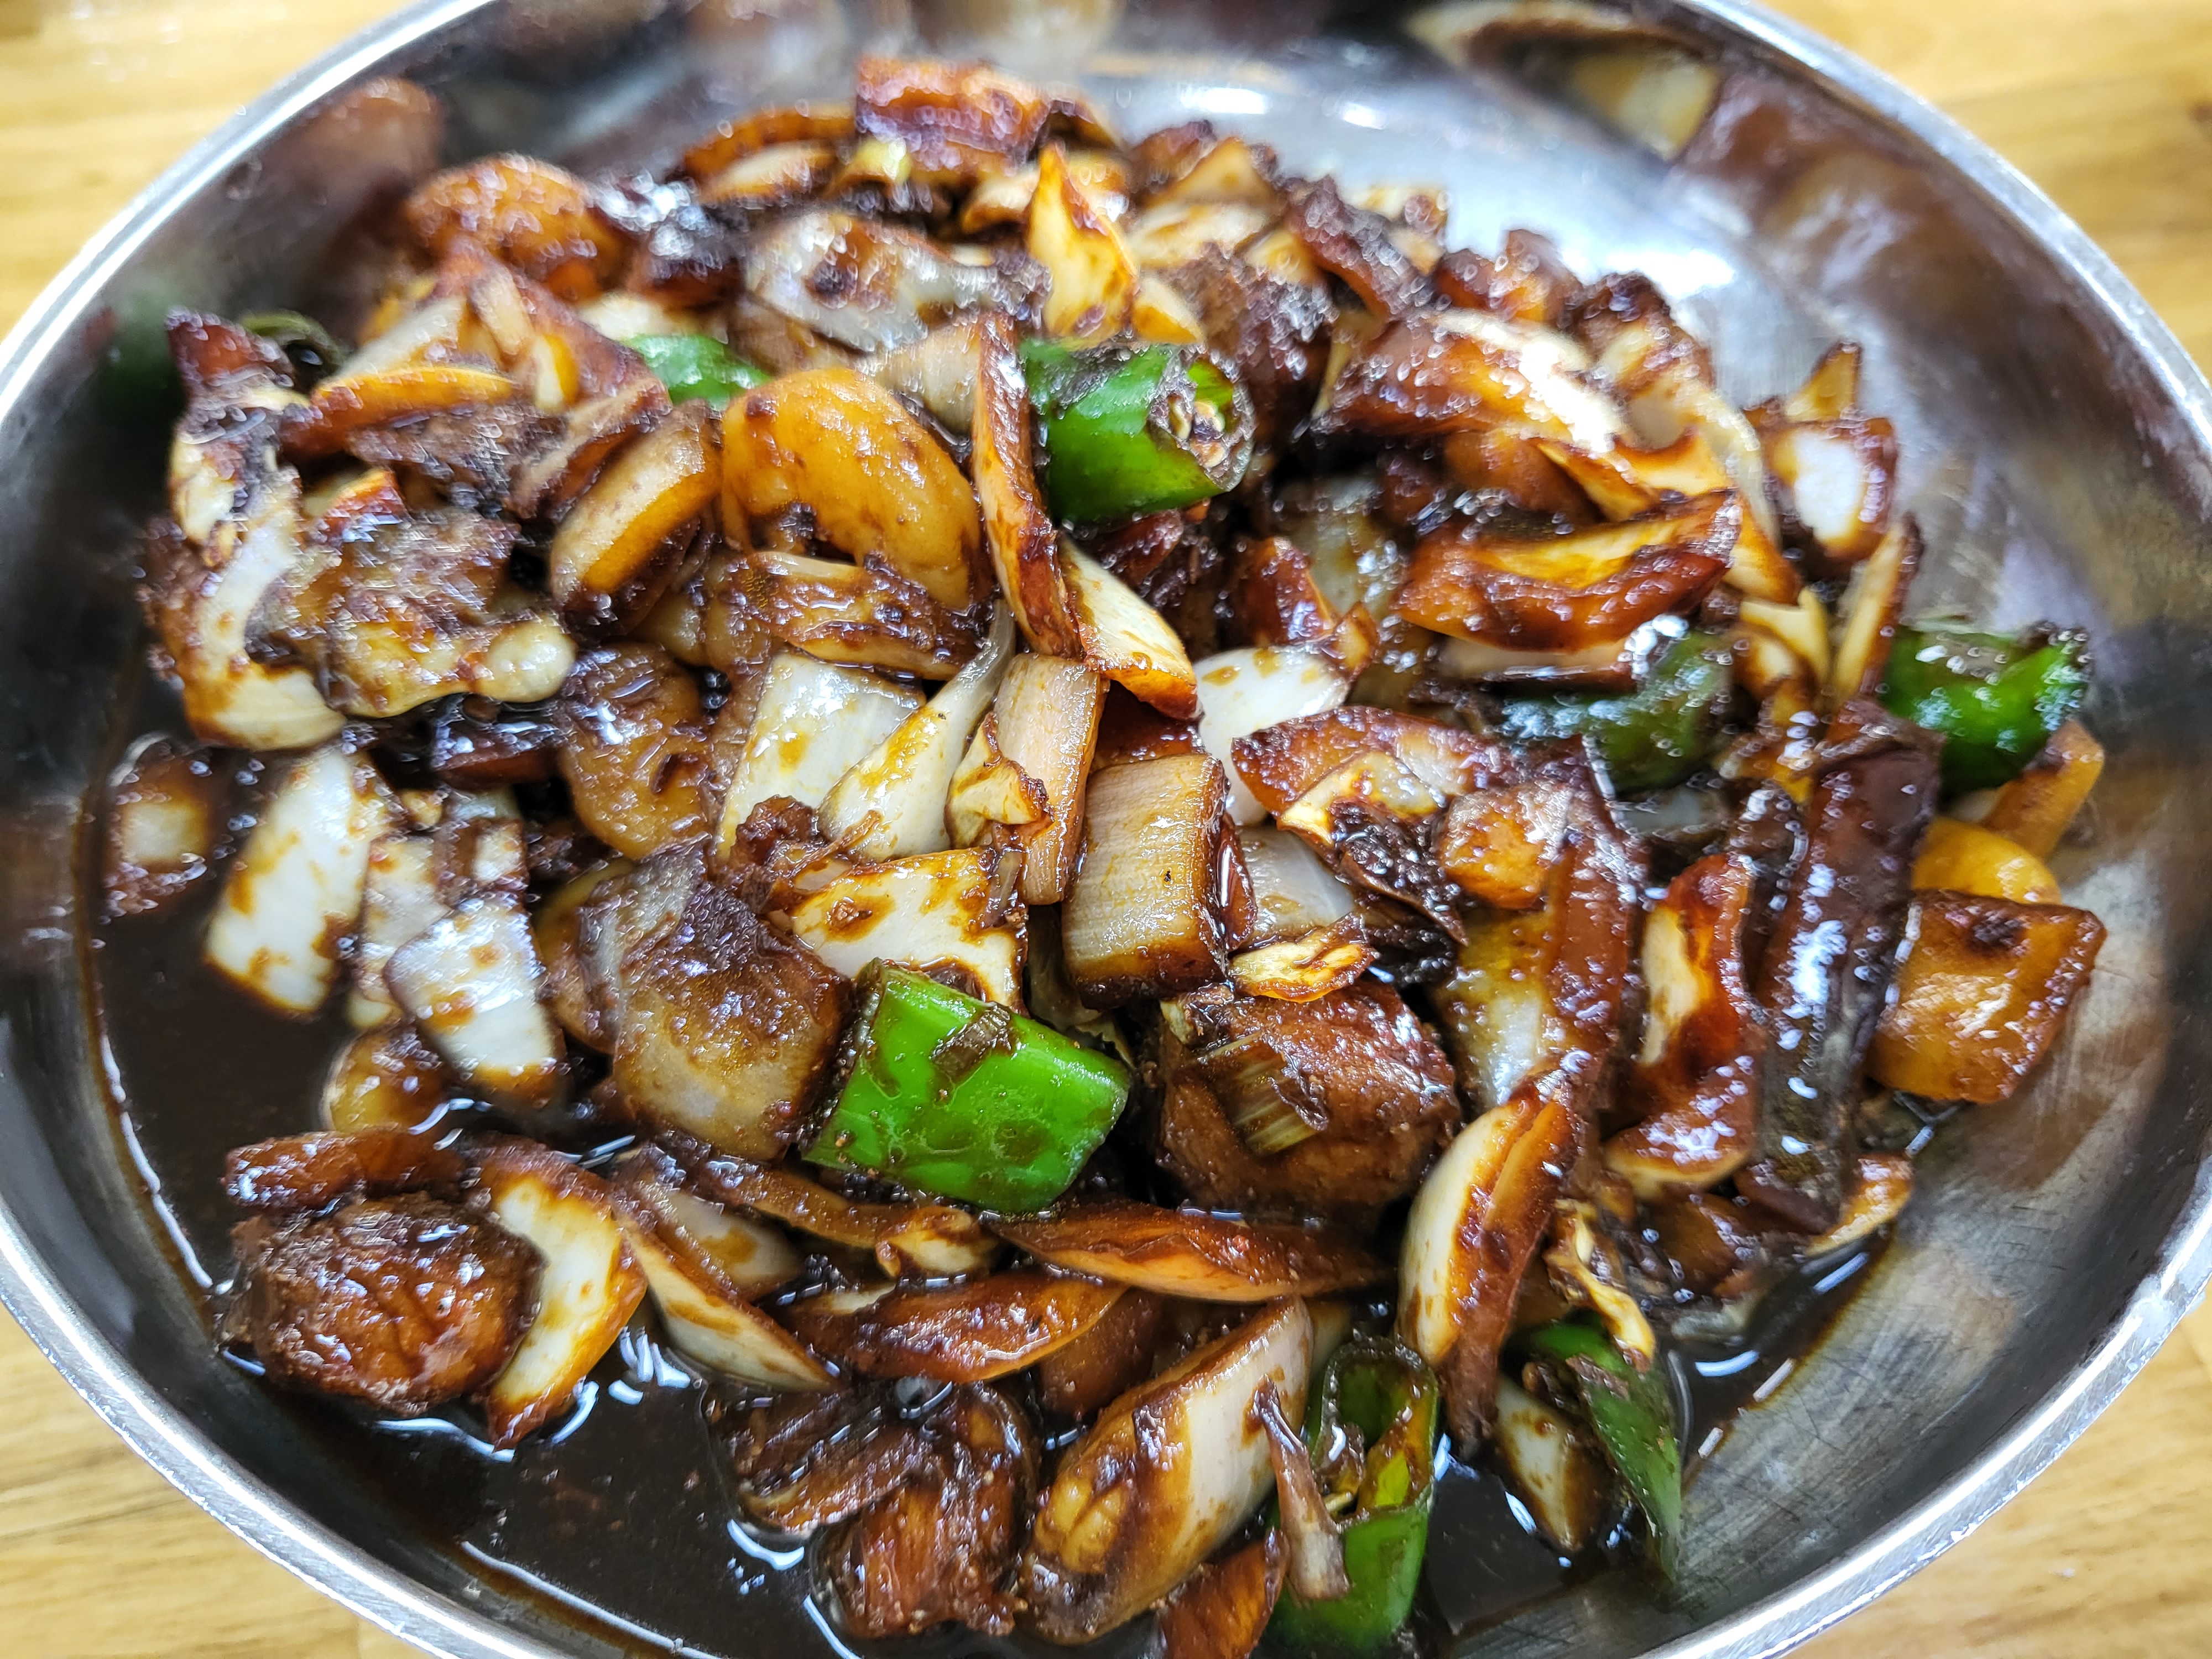 군산 대표 중국음식점인 지린성 고추짜장이다. 알싸한게 정말 감칠맛나는 짜장면이다